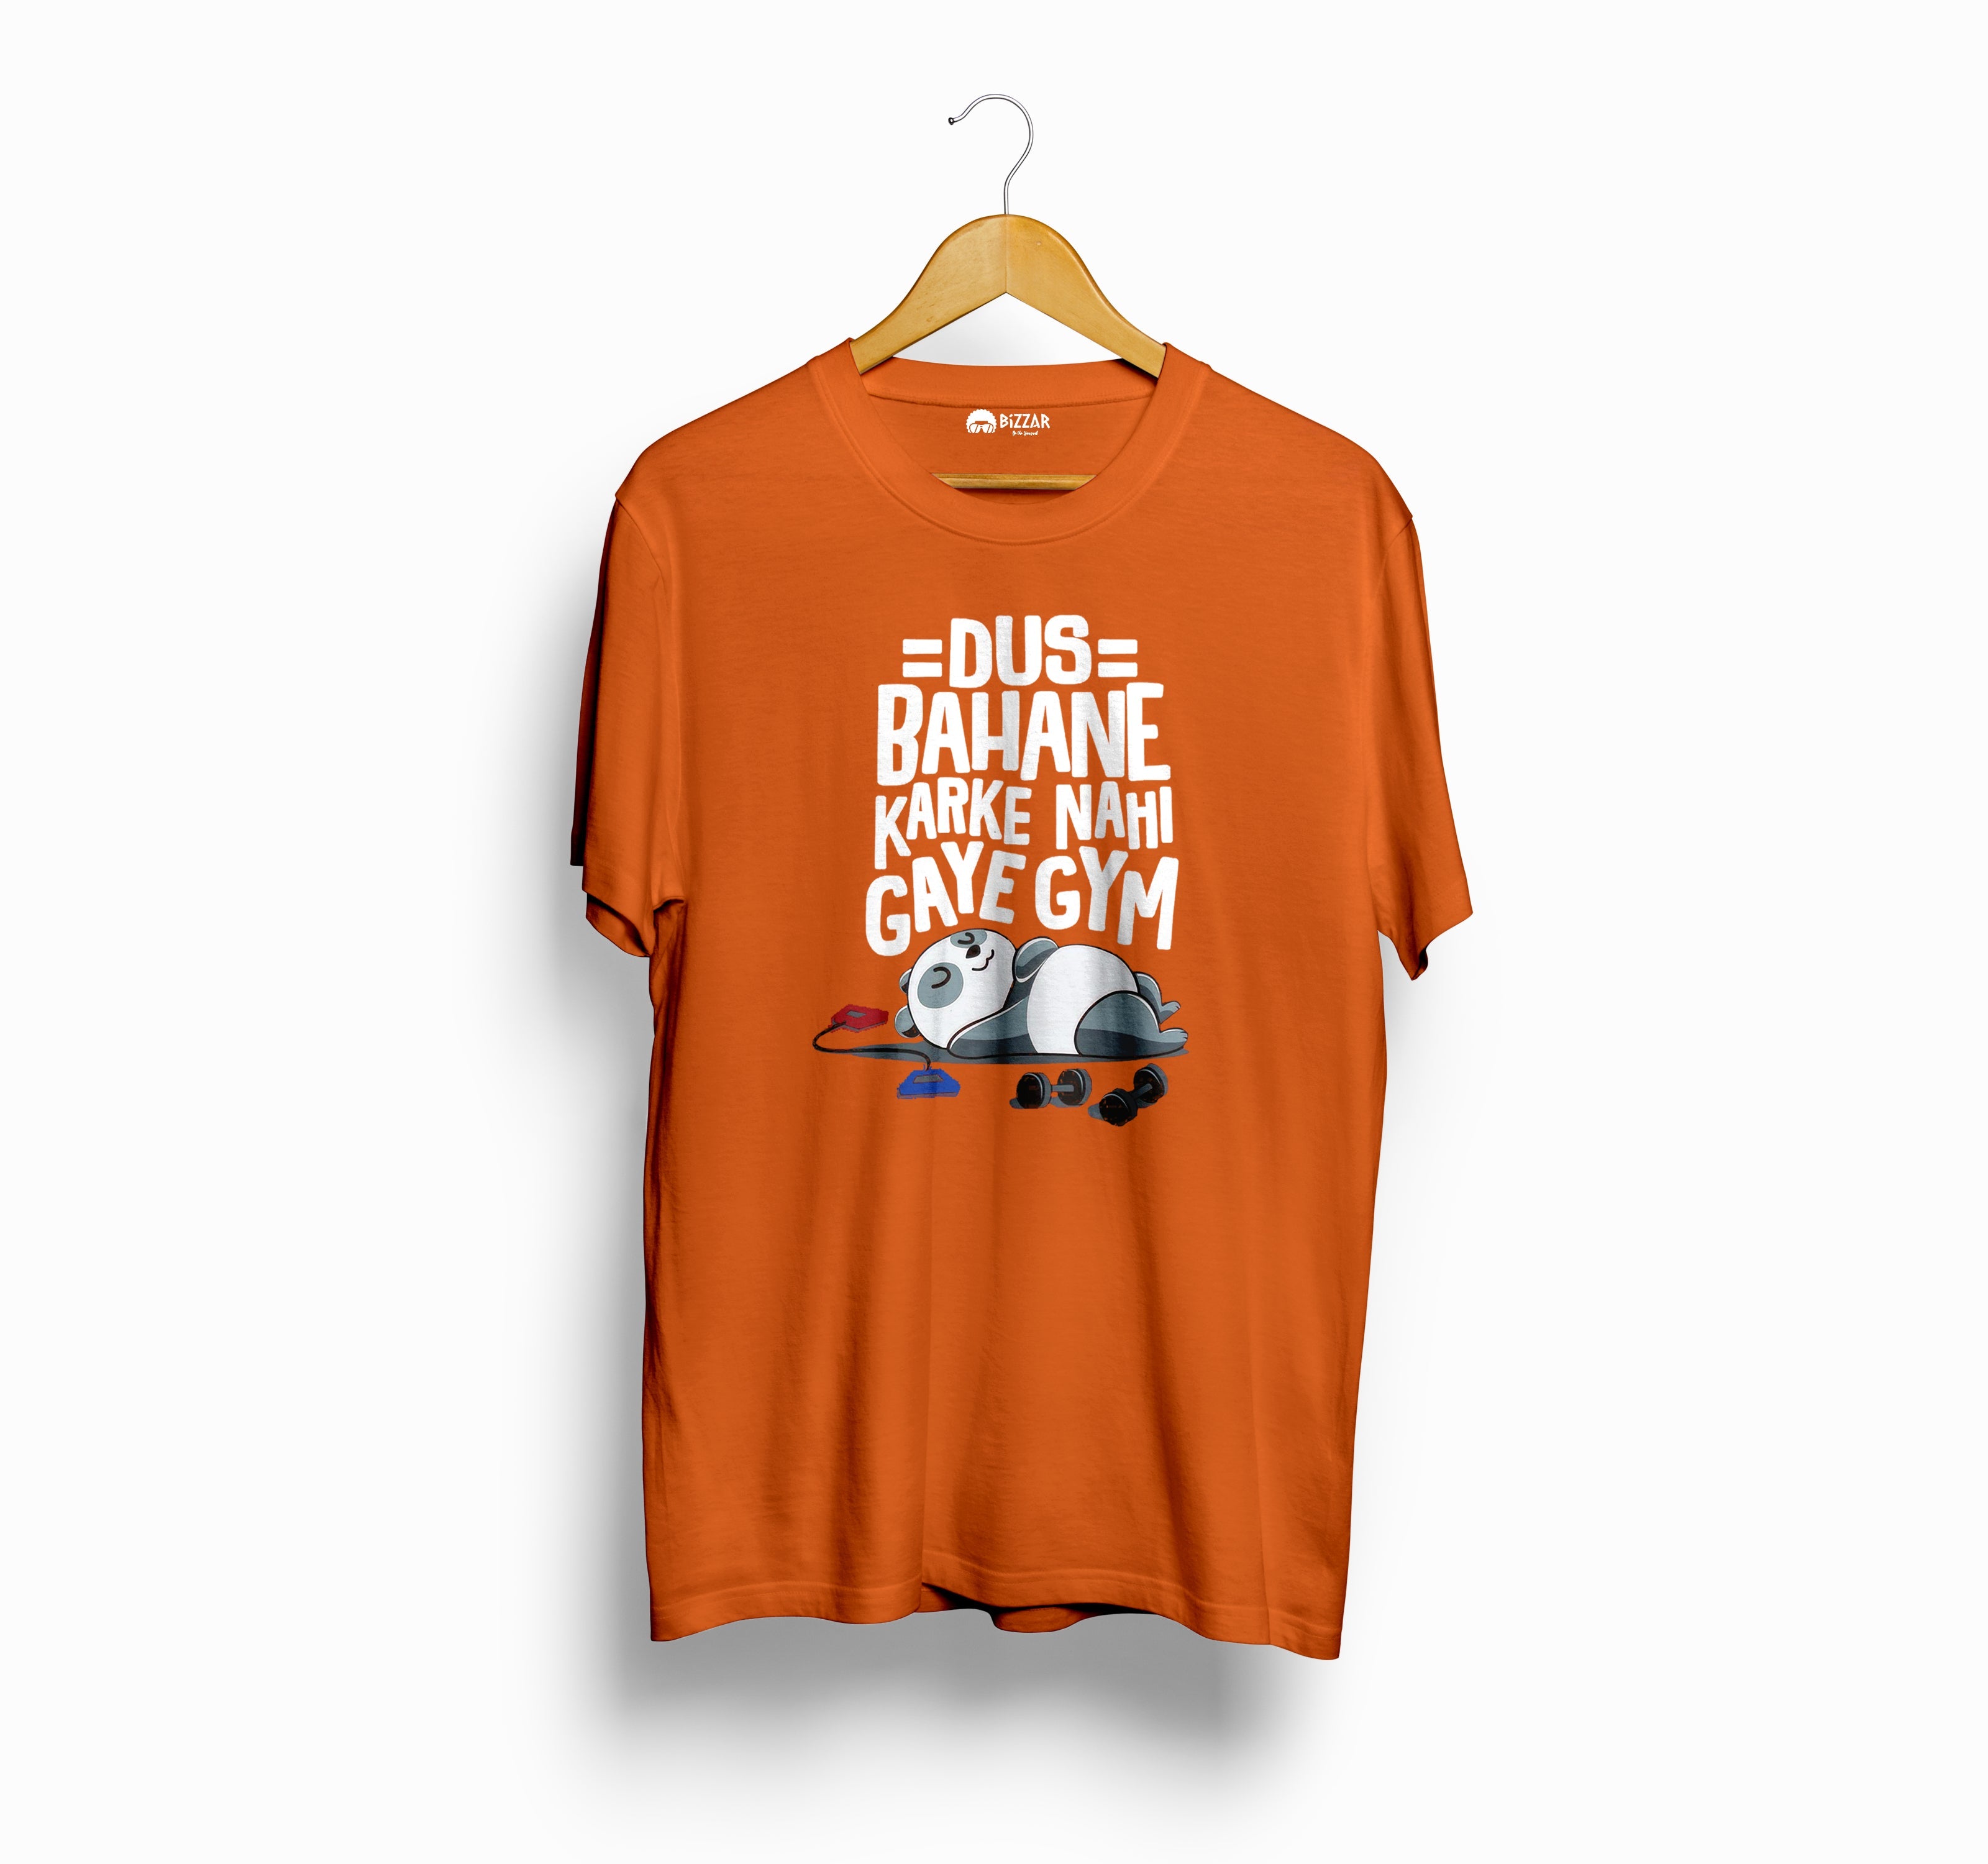 Bizzar's Dus Bahane krke nhi gye Gym Orange T-Shirt